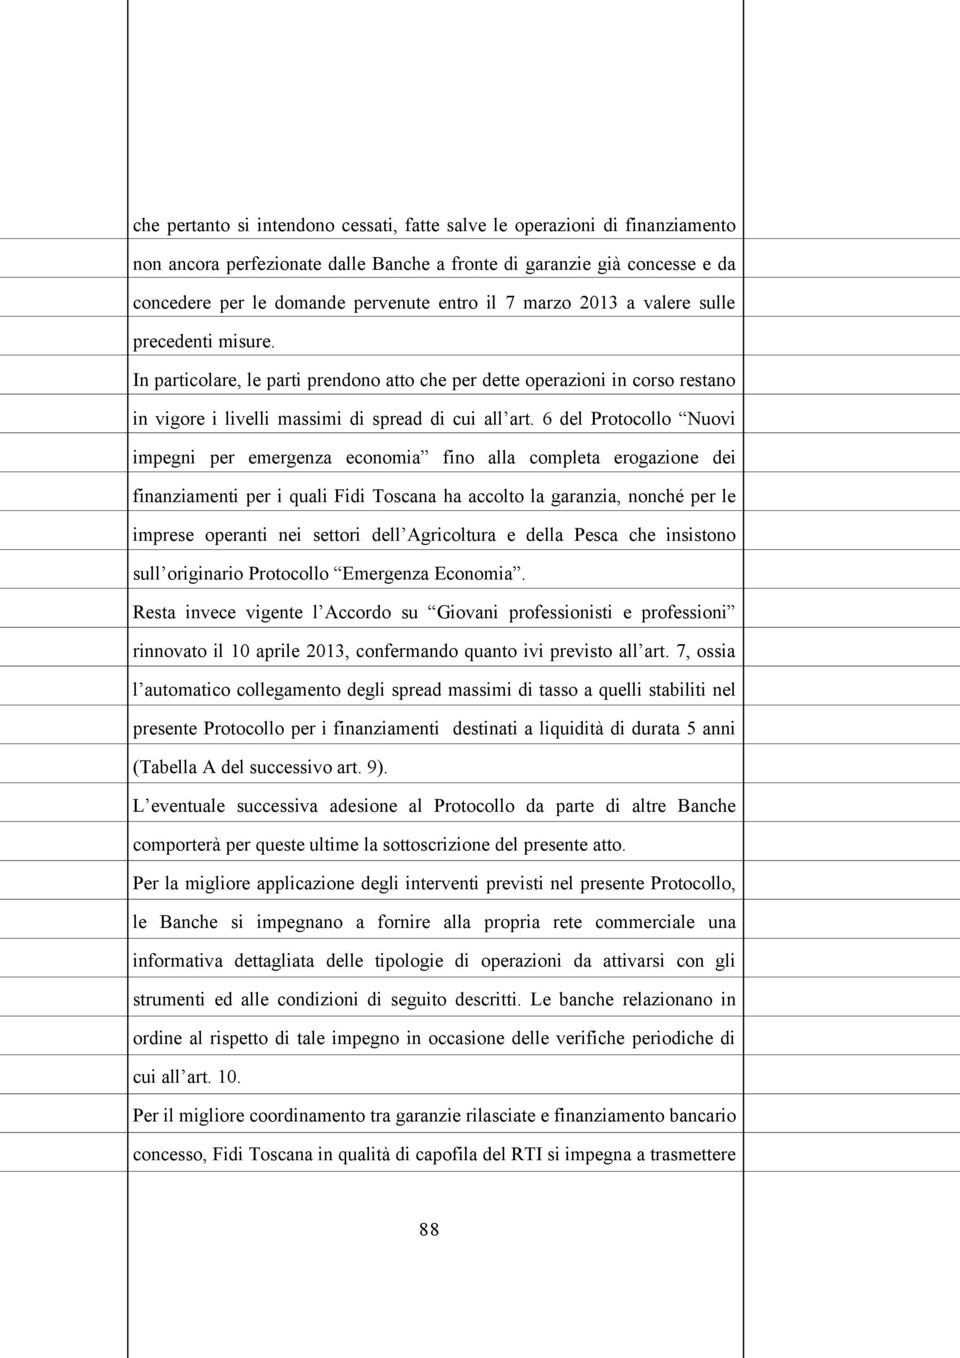 6 del Protocollo Nuovi impegni per emergenza economia fino alla completa erogazione dei finanziamenti per i quali Fidi Toscana ha accolto la garanzia, nonché per le imprese operanti nei settori dell